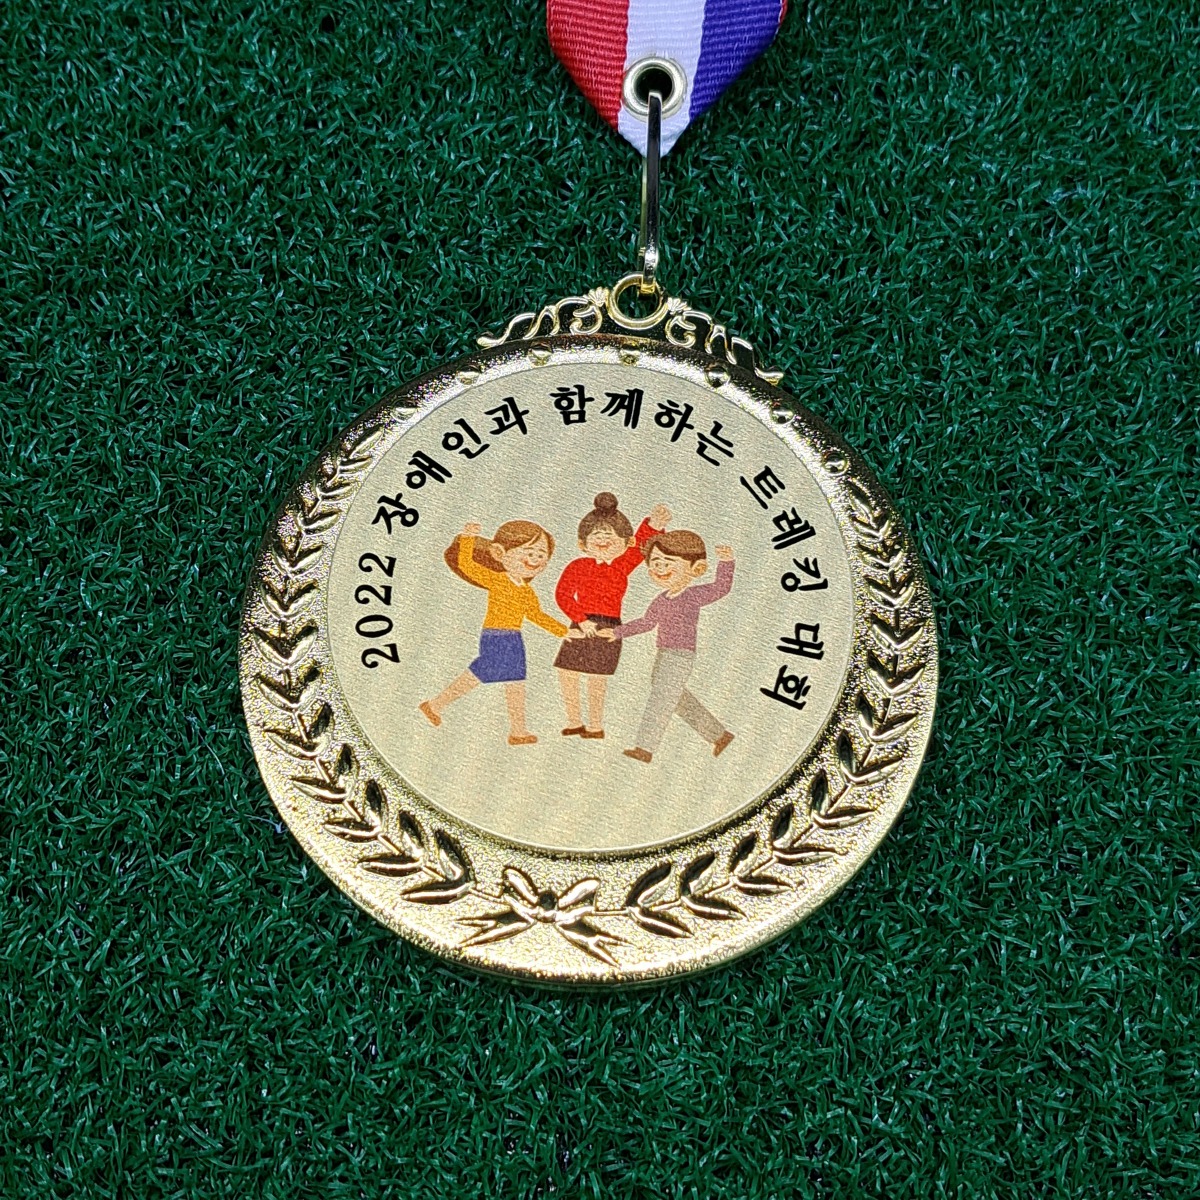 트레킹 대회 메달 제작 - 장애인 부문 경기 생활 체육 기념 우승 기념메달 소량 인쇄 342